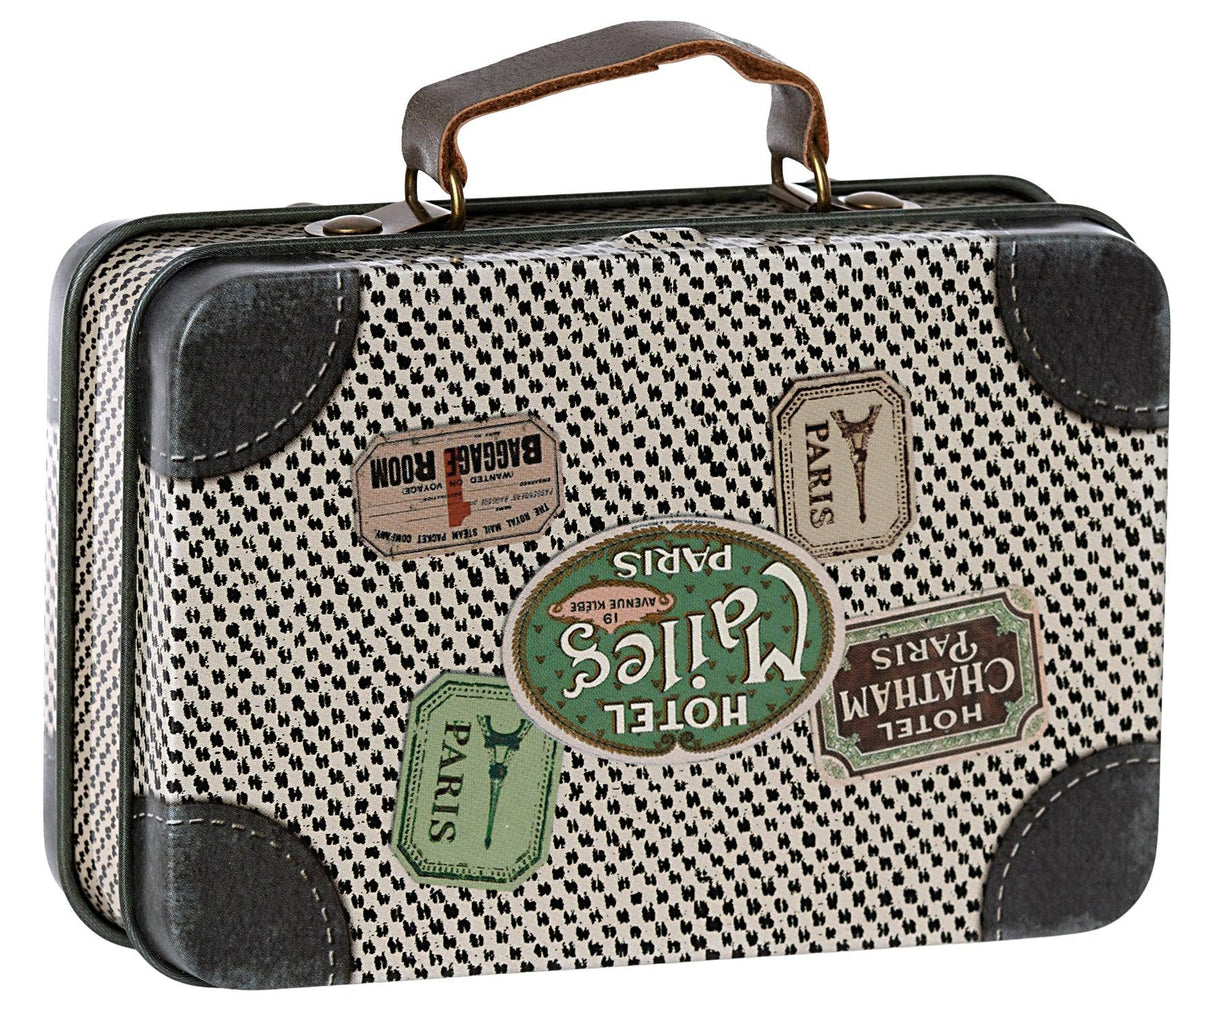 Stylowa walizka dla dziewczynek Maileg, idealna na podręczne drobiazgi, retro design, metal i skóra, Travel Off White.